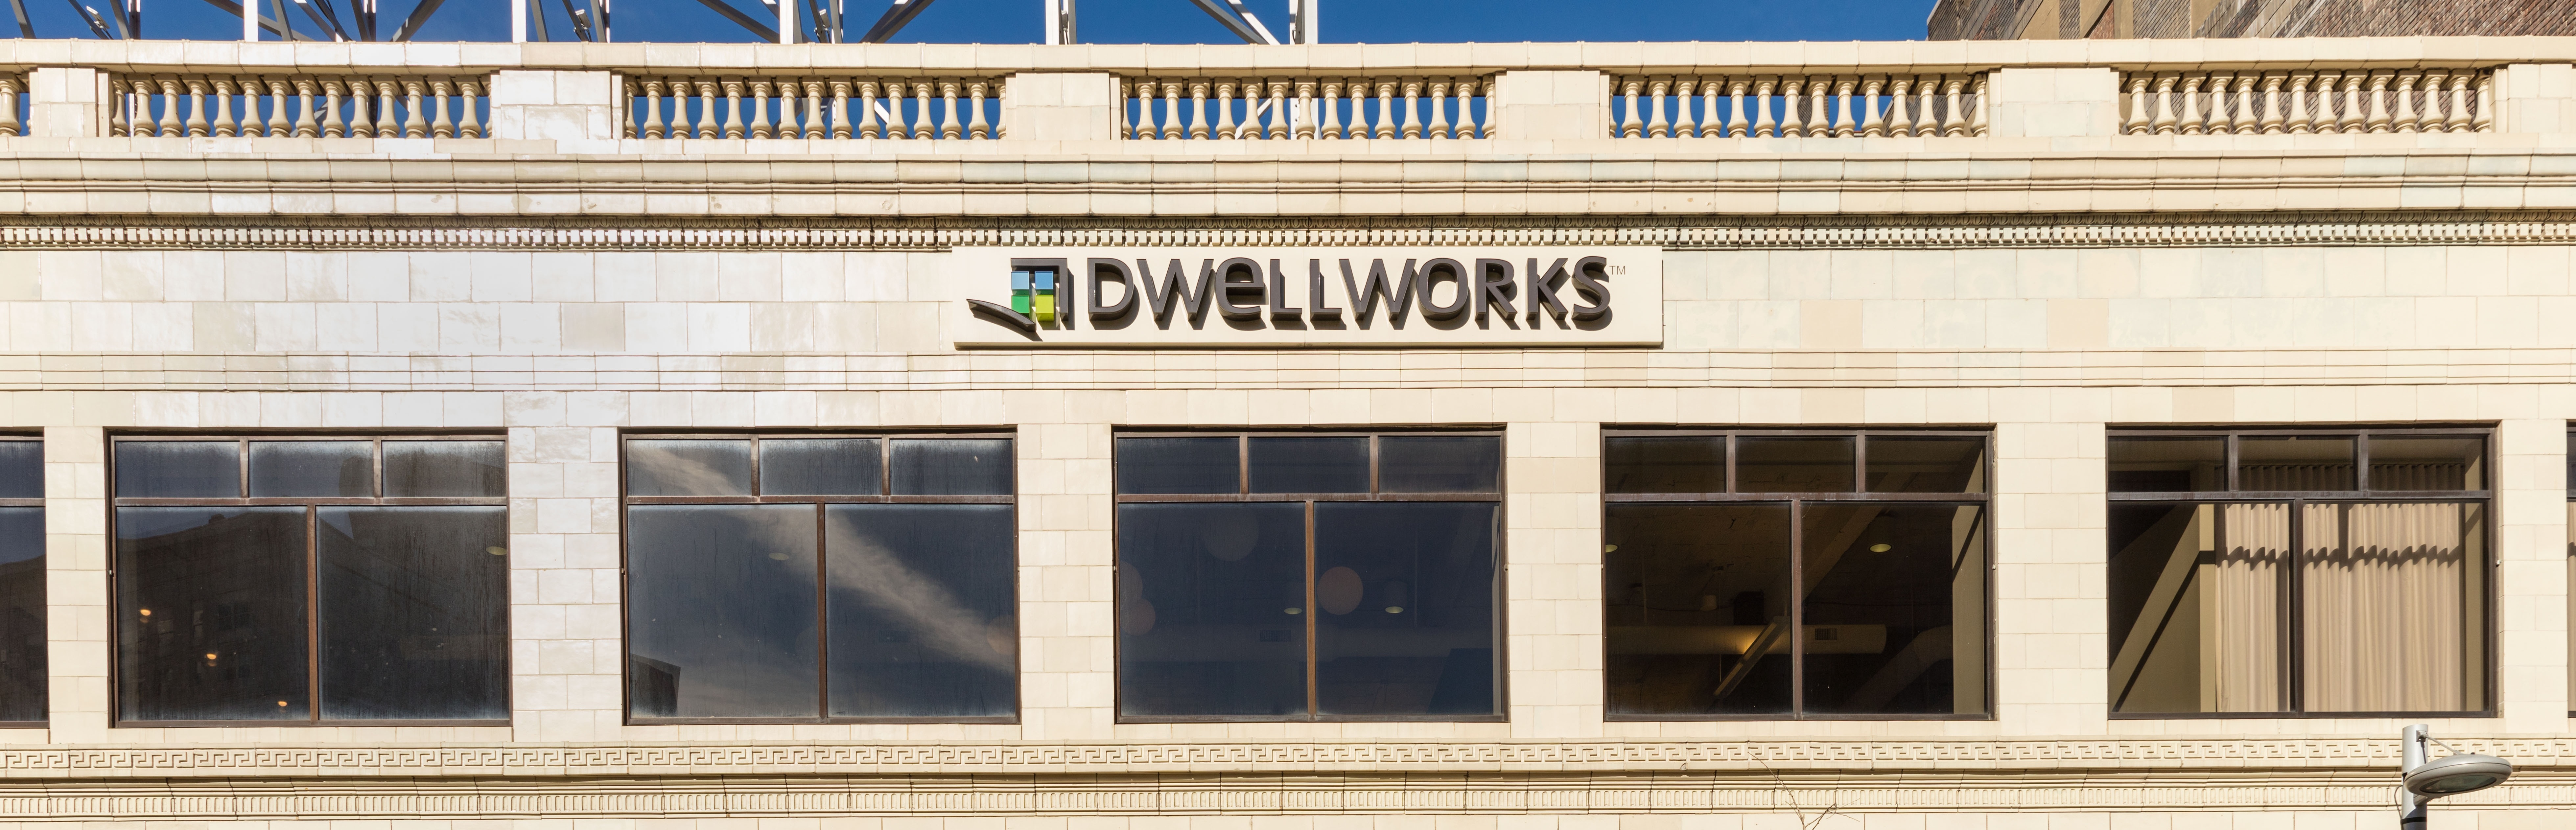  Dwellworks 11_15 01-518674-edited